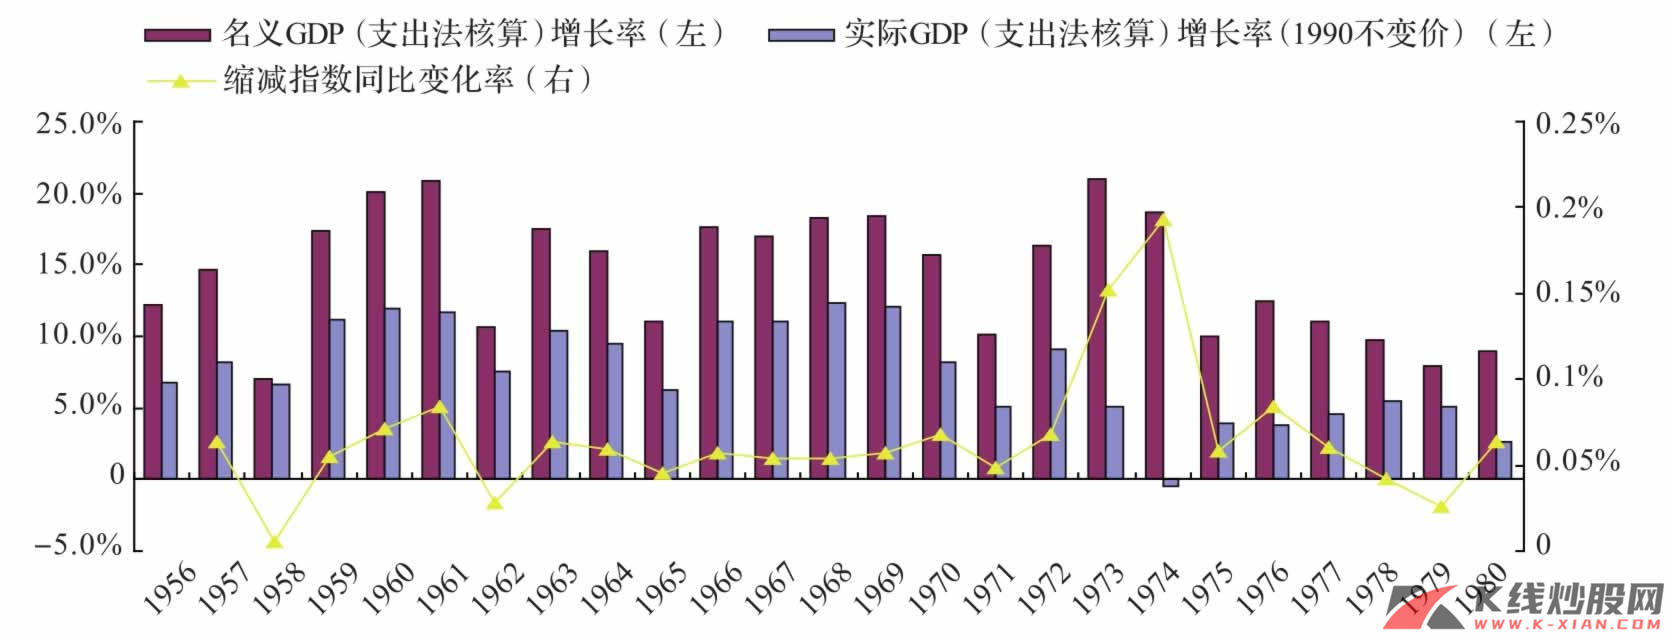 日本70年代GDP增速与缩减指数同比增速比较